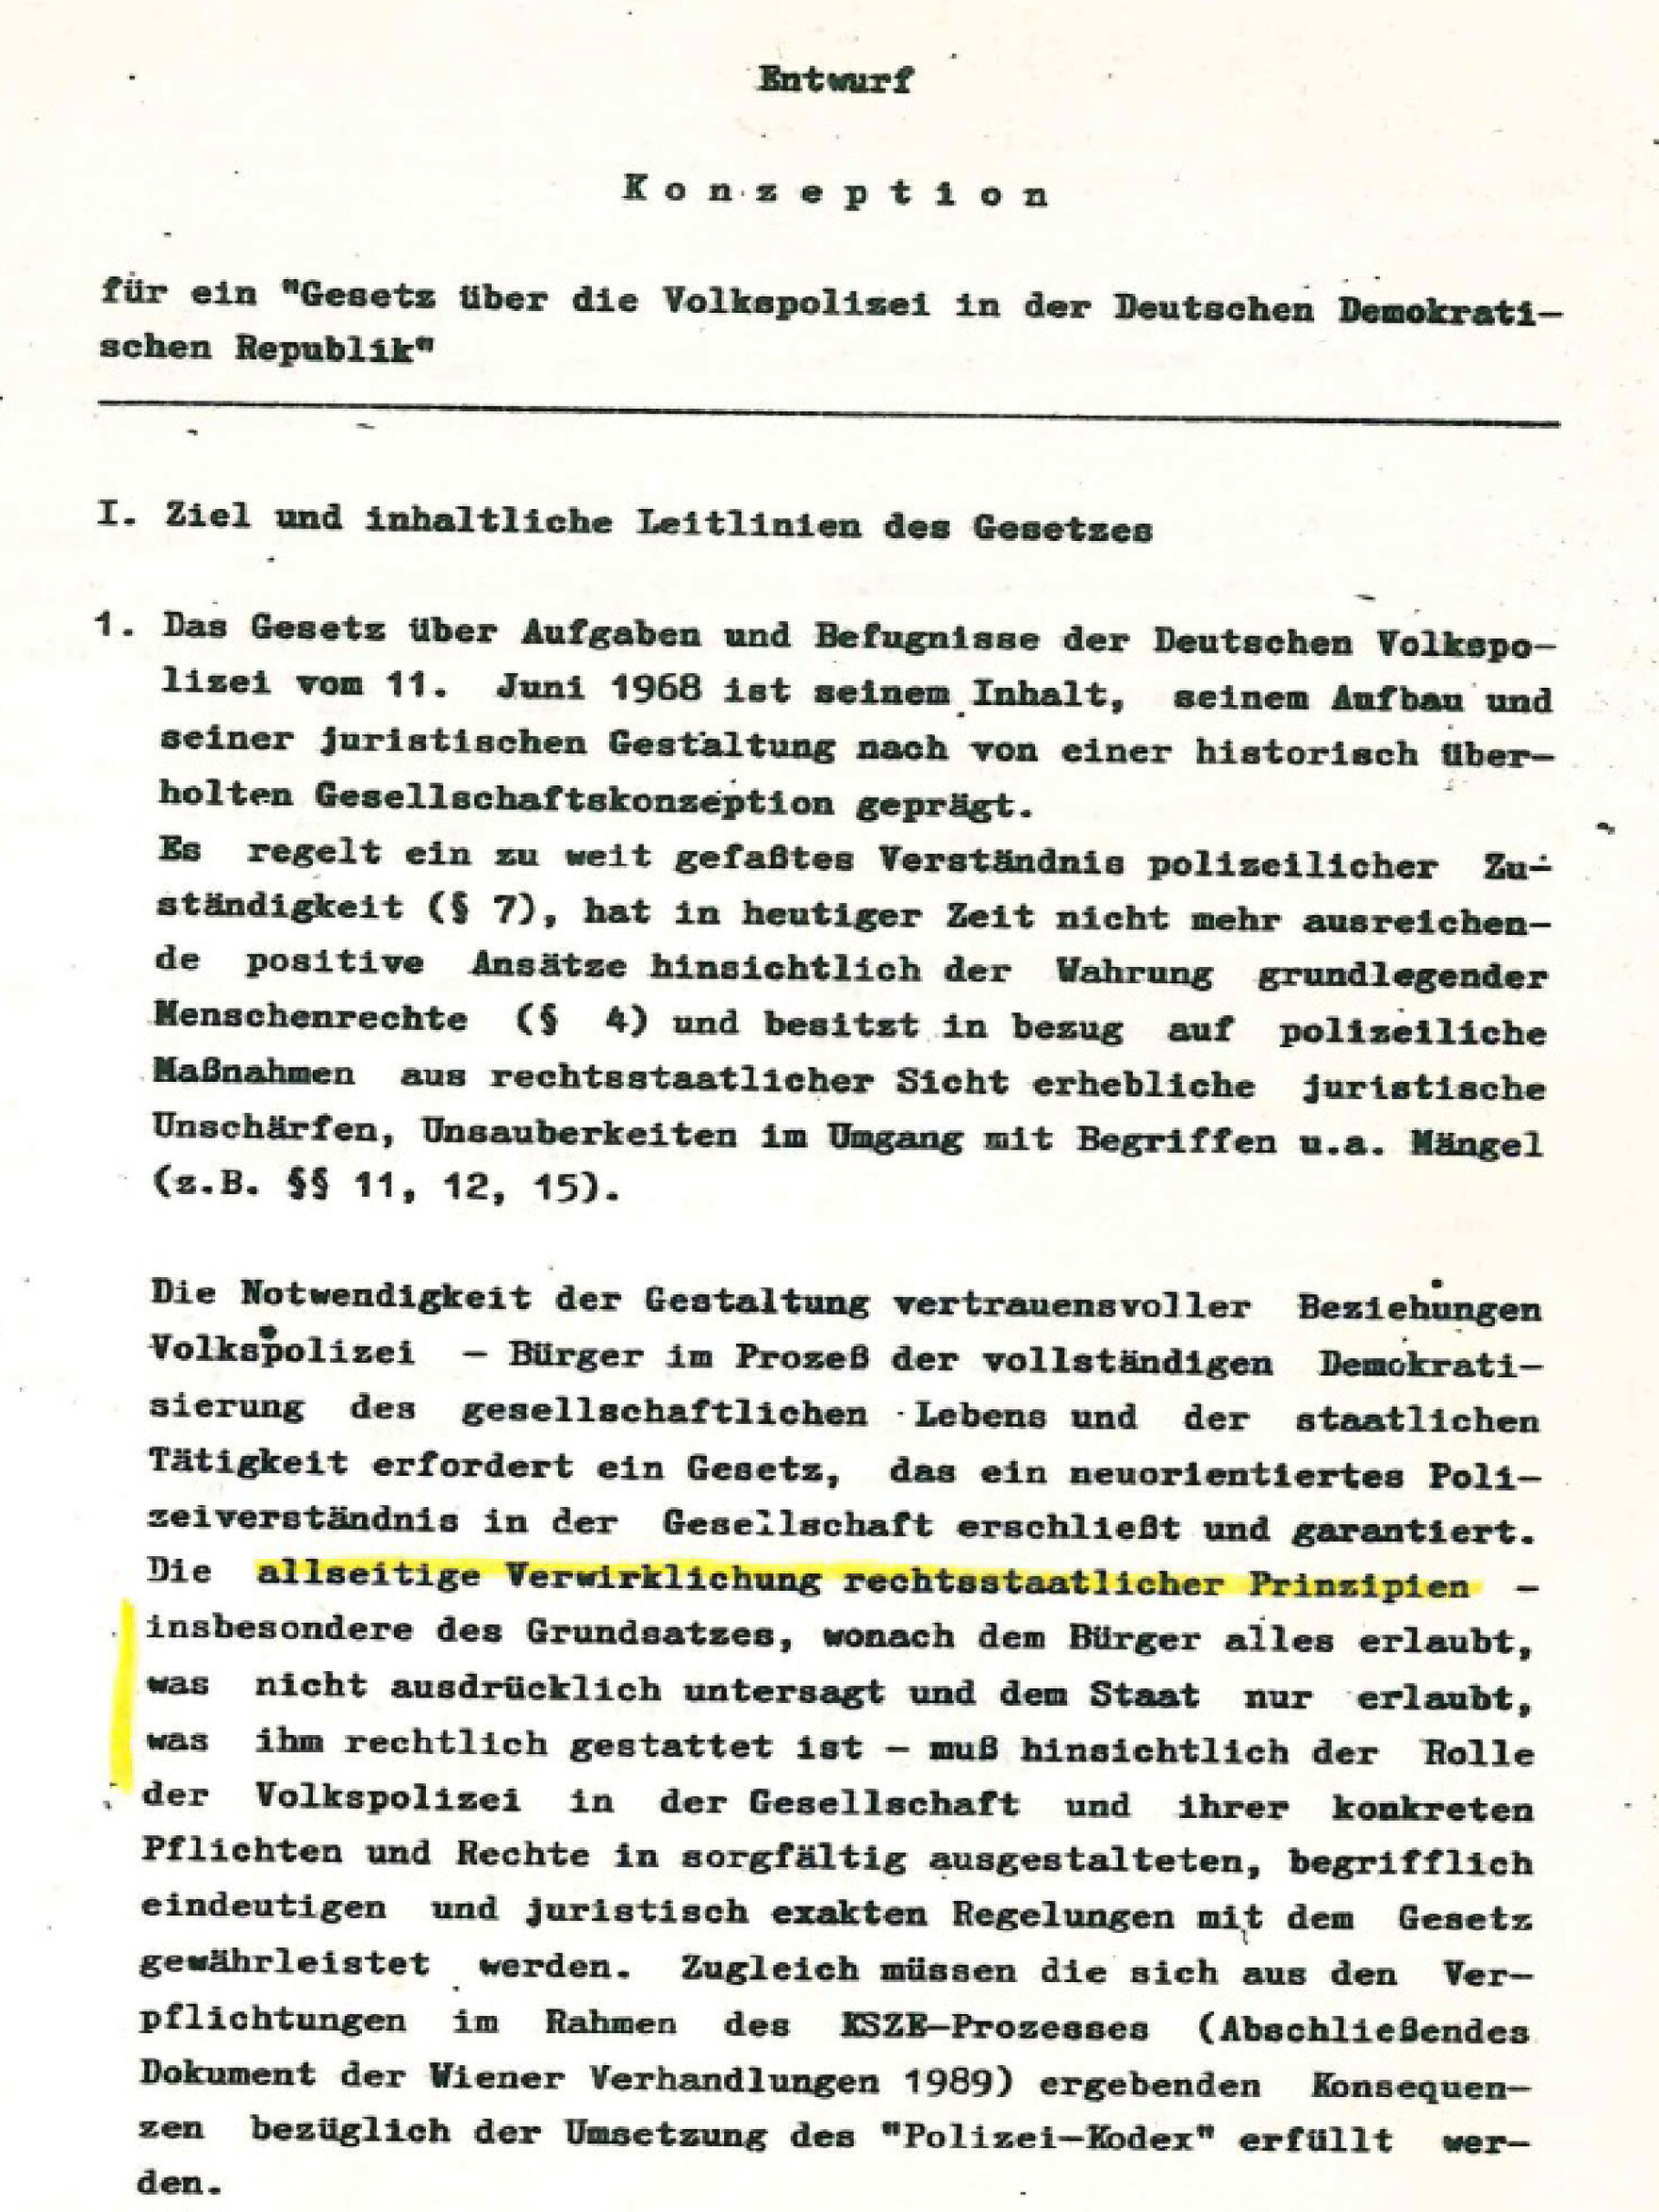 Das Dokument zeigt den Entwurf »Konzeption für ein "Gesetz über die Volkspolizei in der Deutschen Demokratischen Republik"«. Auf der Seite ist zu lesen: »I. Ziel und inhaltliche Leitlinien des Gesetzes«.